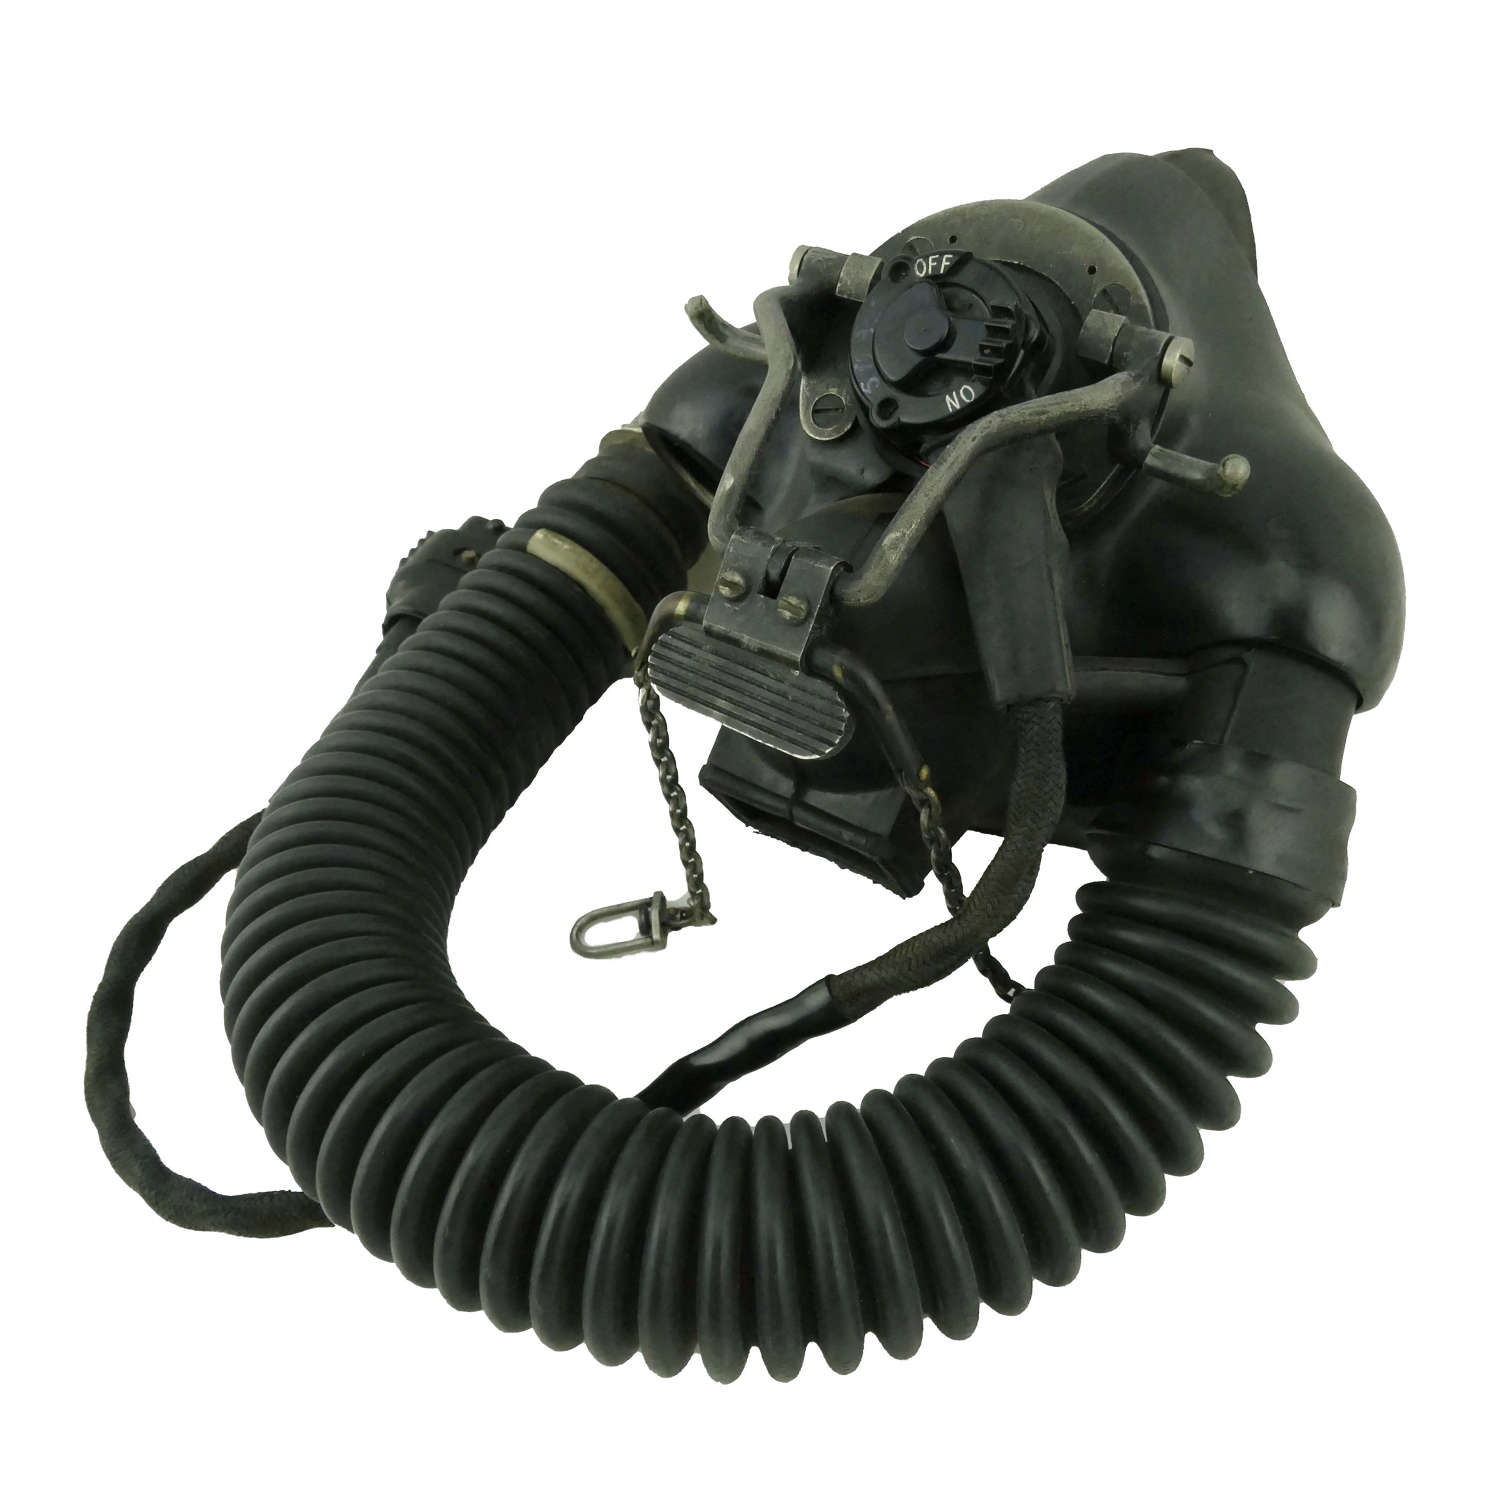 RAF type P oxygen mask / tube